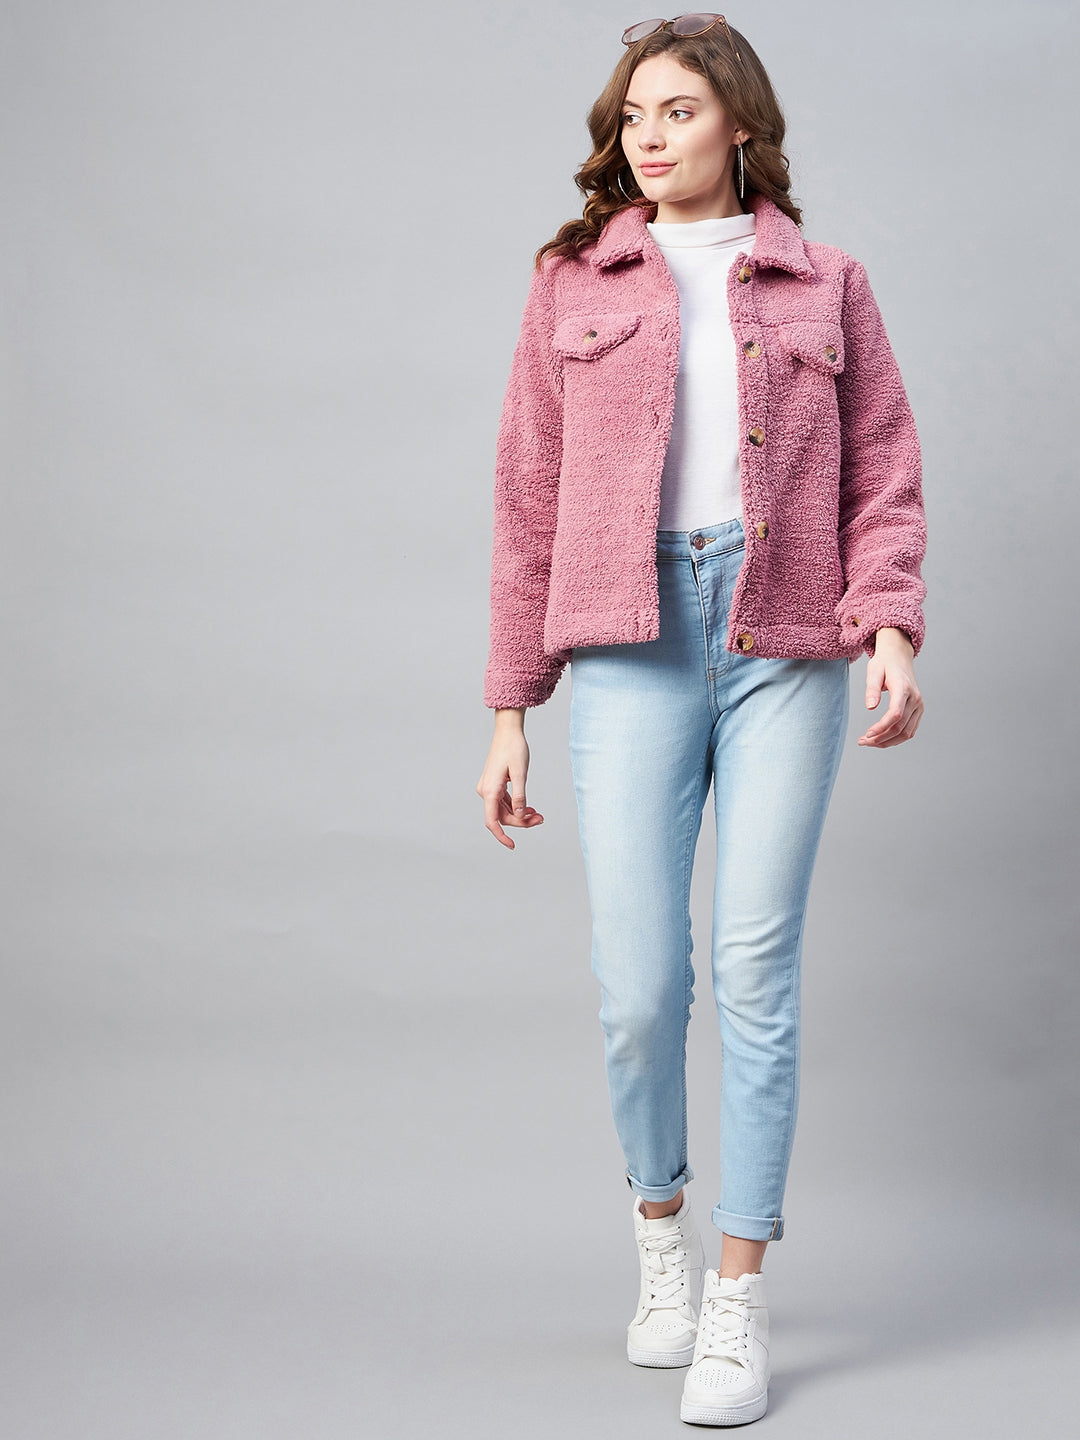 StyleStone Women's Pink Fleece Casual Winter Jacket